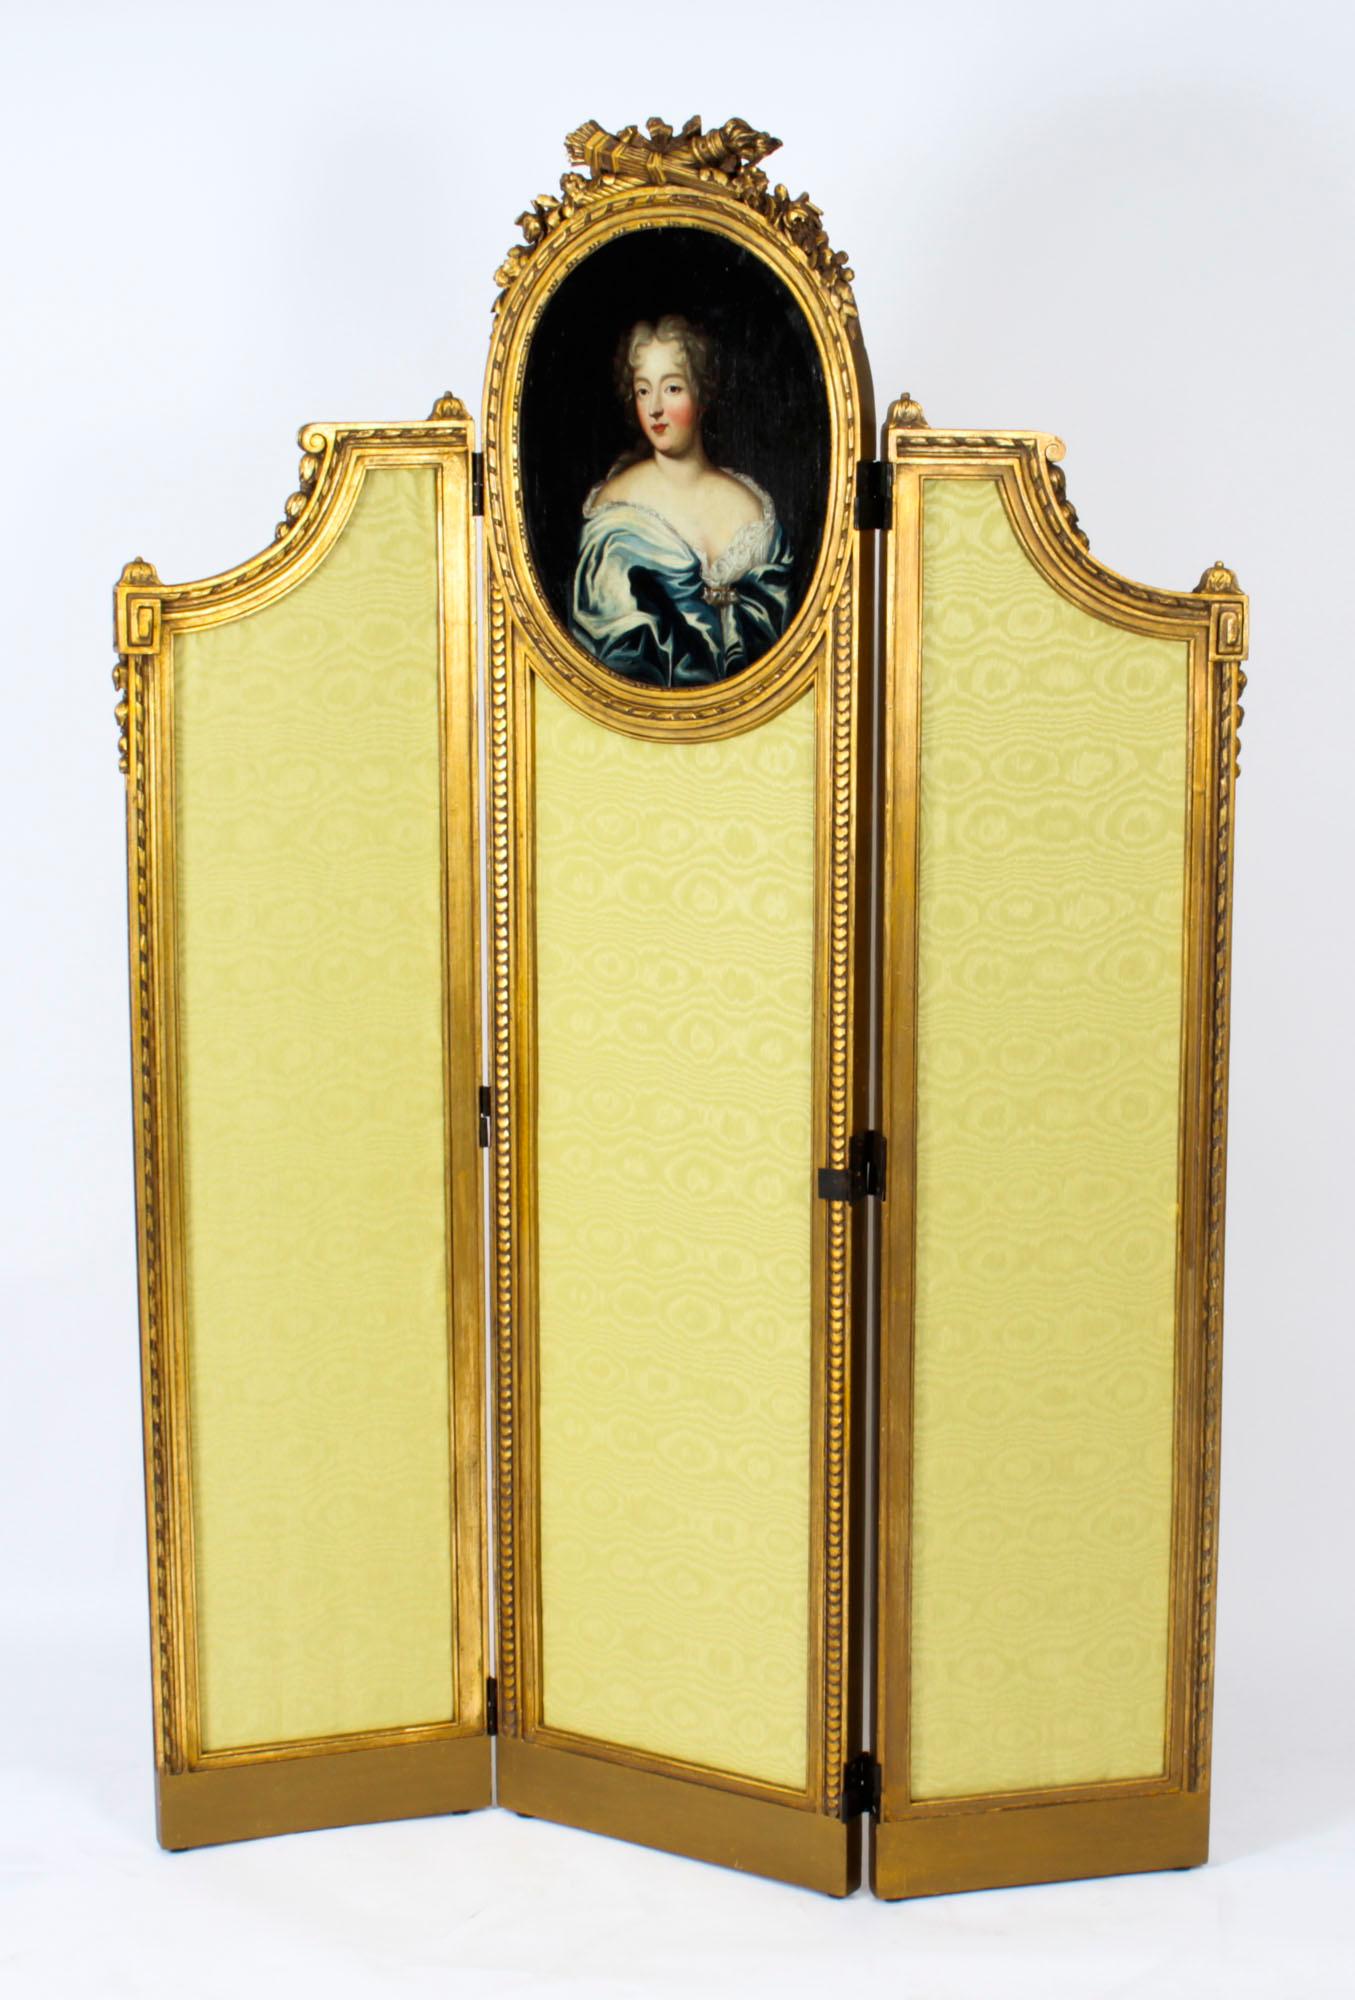 Eine schöne antike Französisch Louis Revival vergoldet drei Panel Dressing Bildschirm mit Porträt, um 1850 in Datum.

Der Paravent besteht aus drei wunderschön geschnitzten, perlenbesetzten, rechteckigen Rahmen mit goldfarbenen, gepolsterten